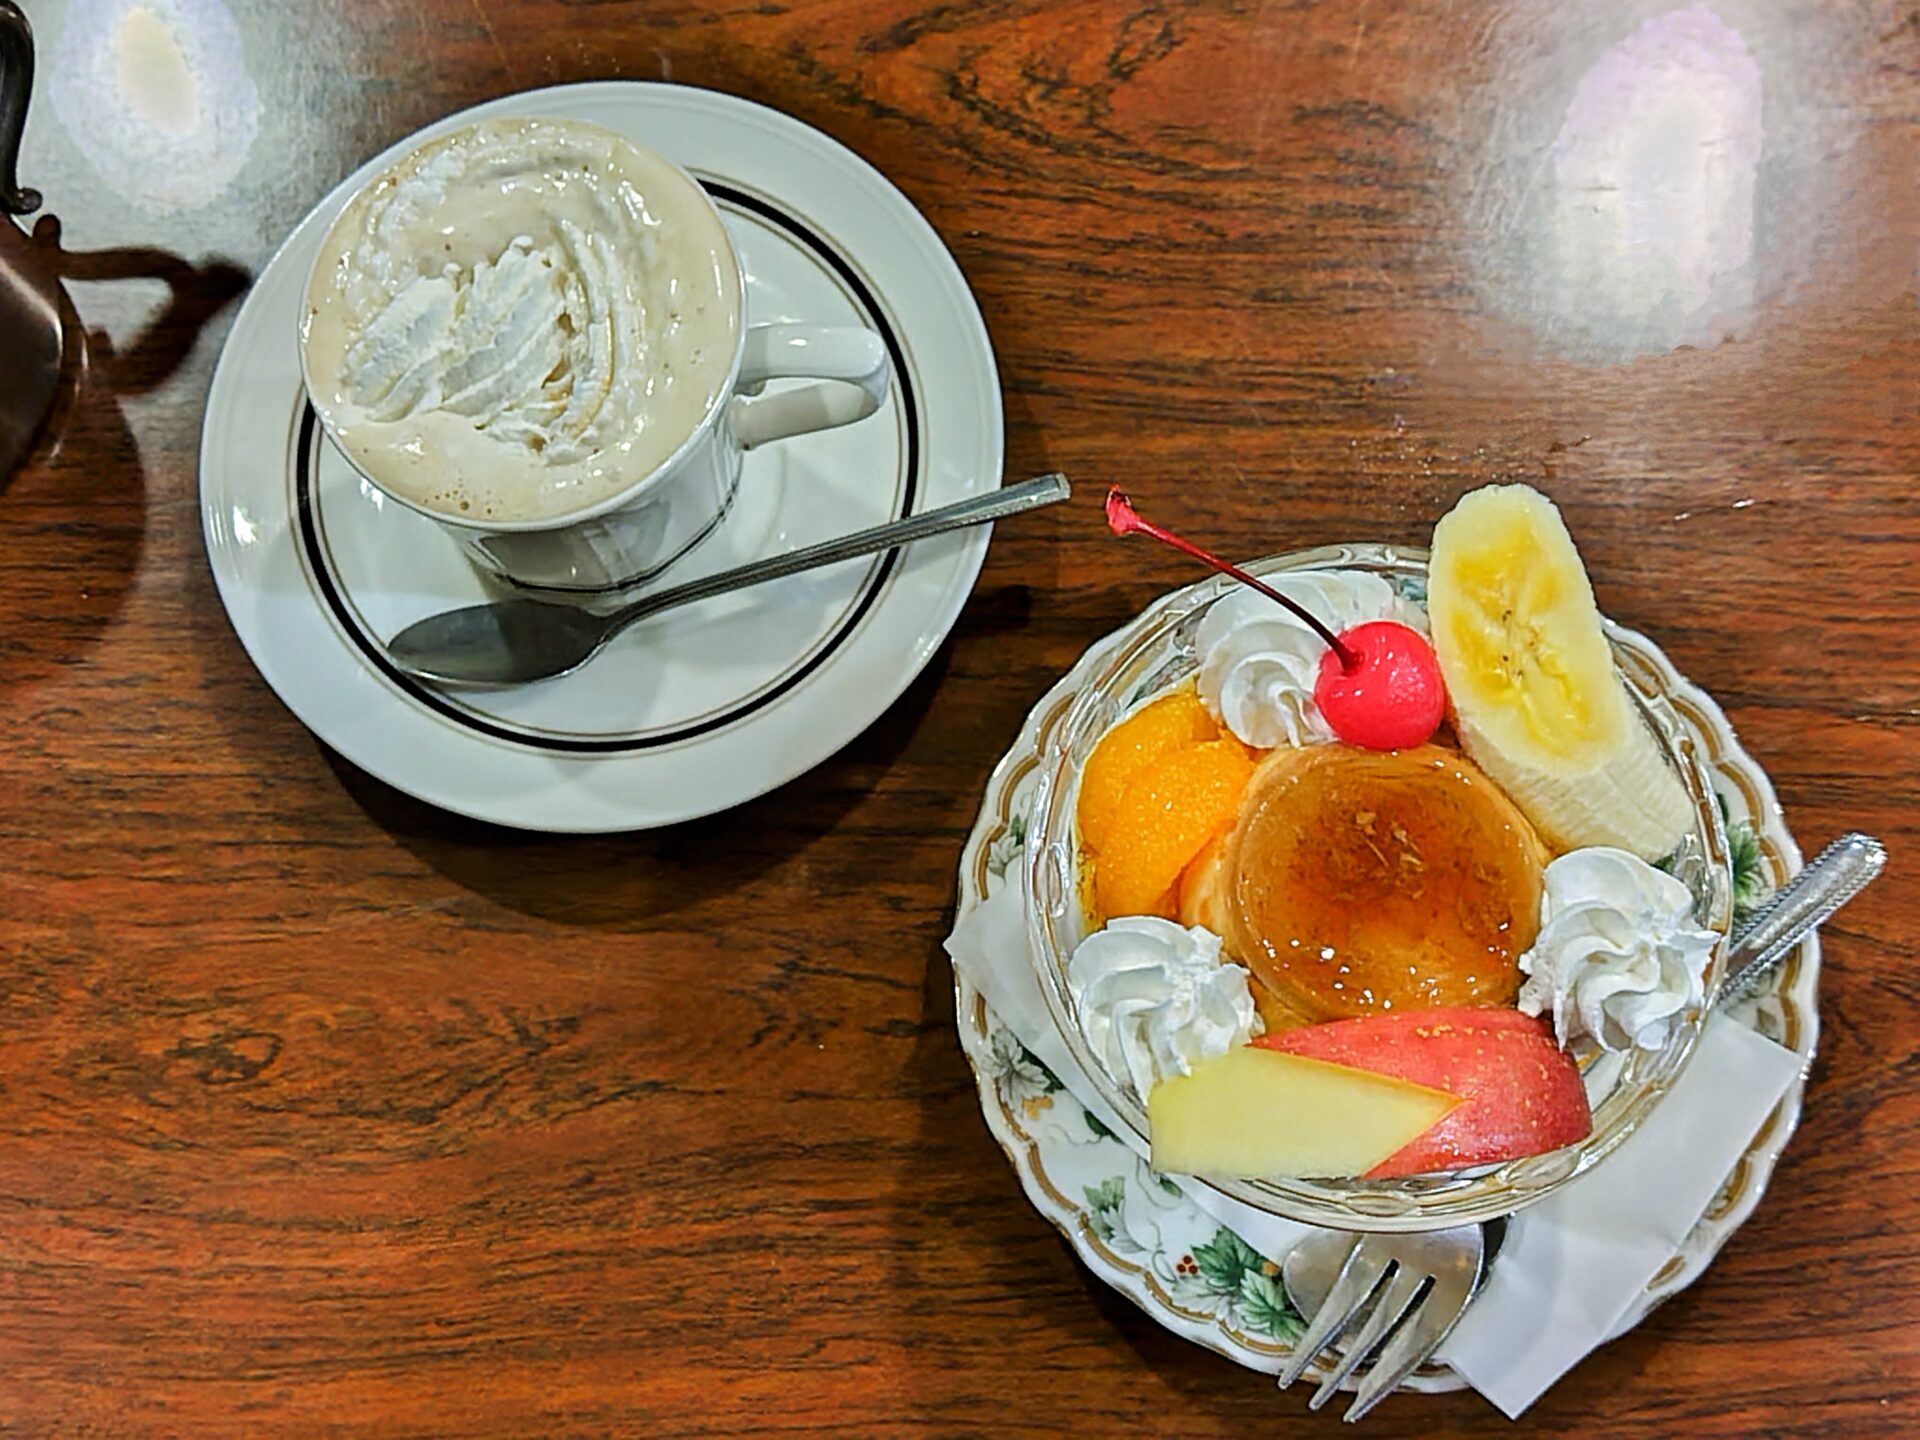 【伊東】昭和レトロな純喫茶「エリーゼ」・昭和の面影に包まれ、ちょっと一息。